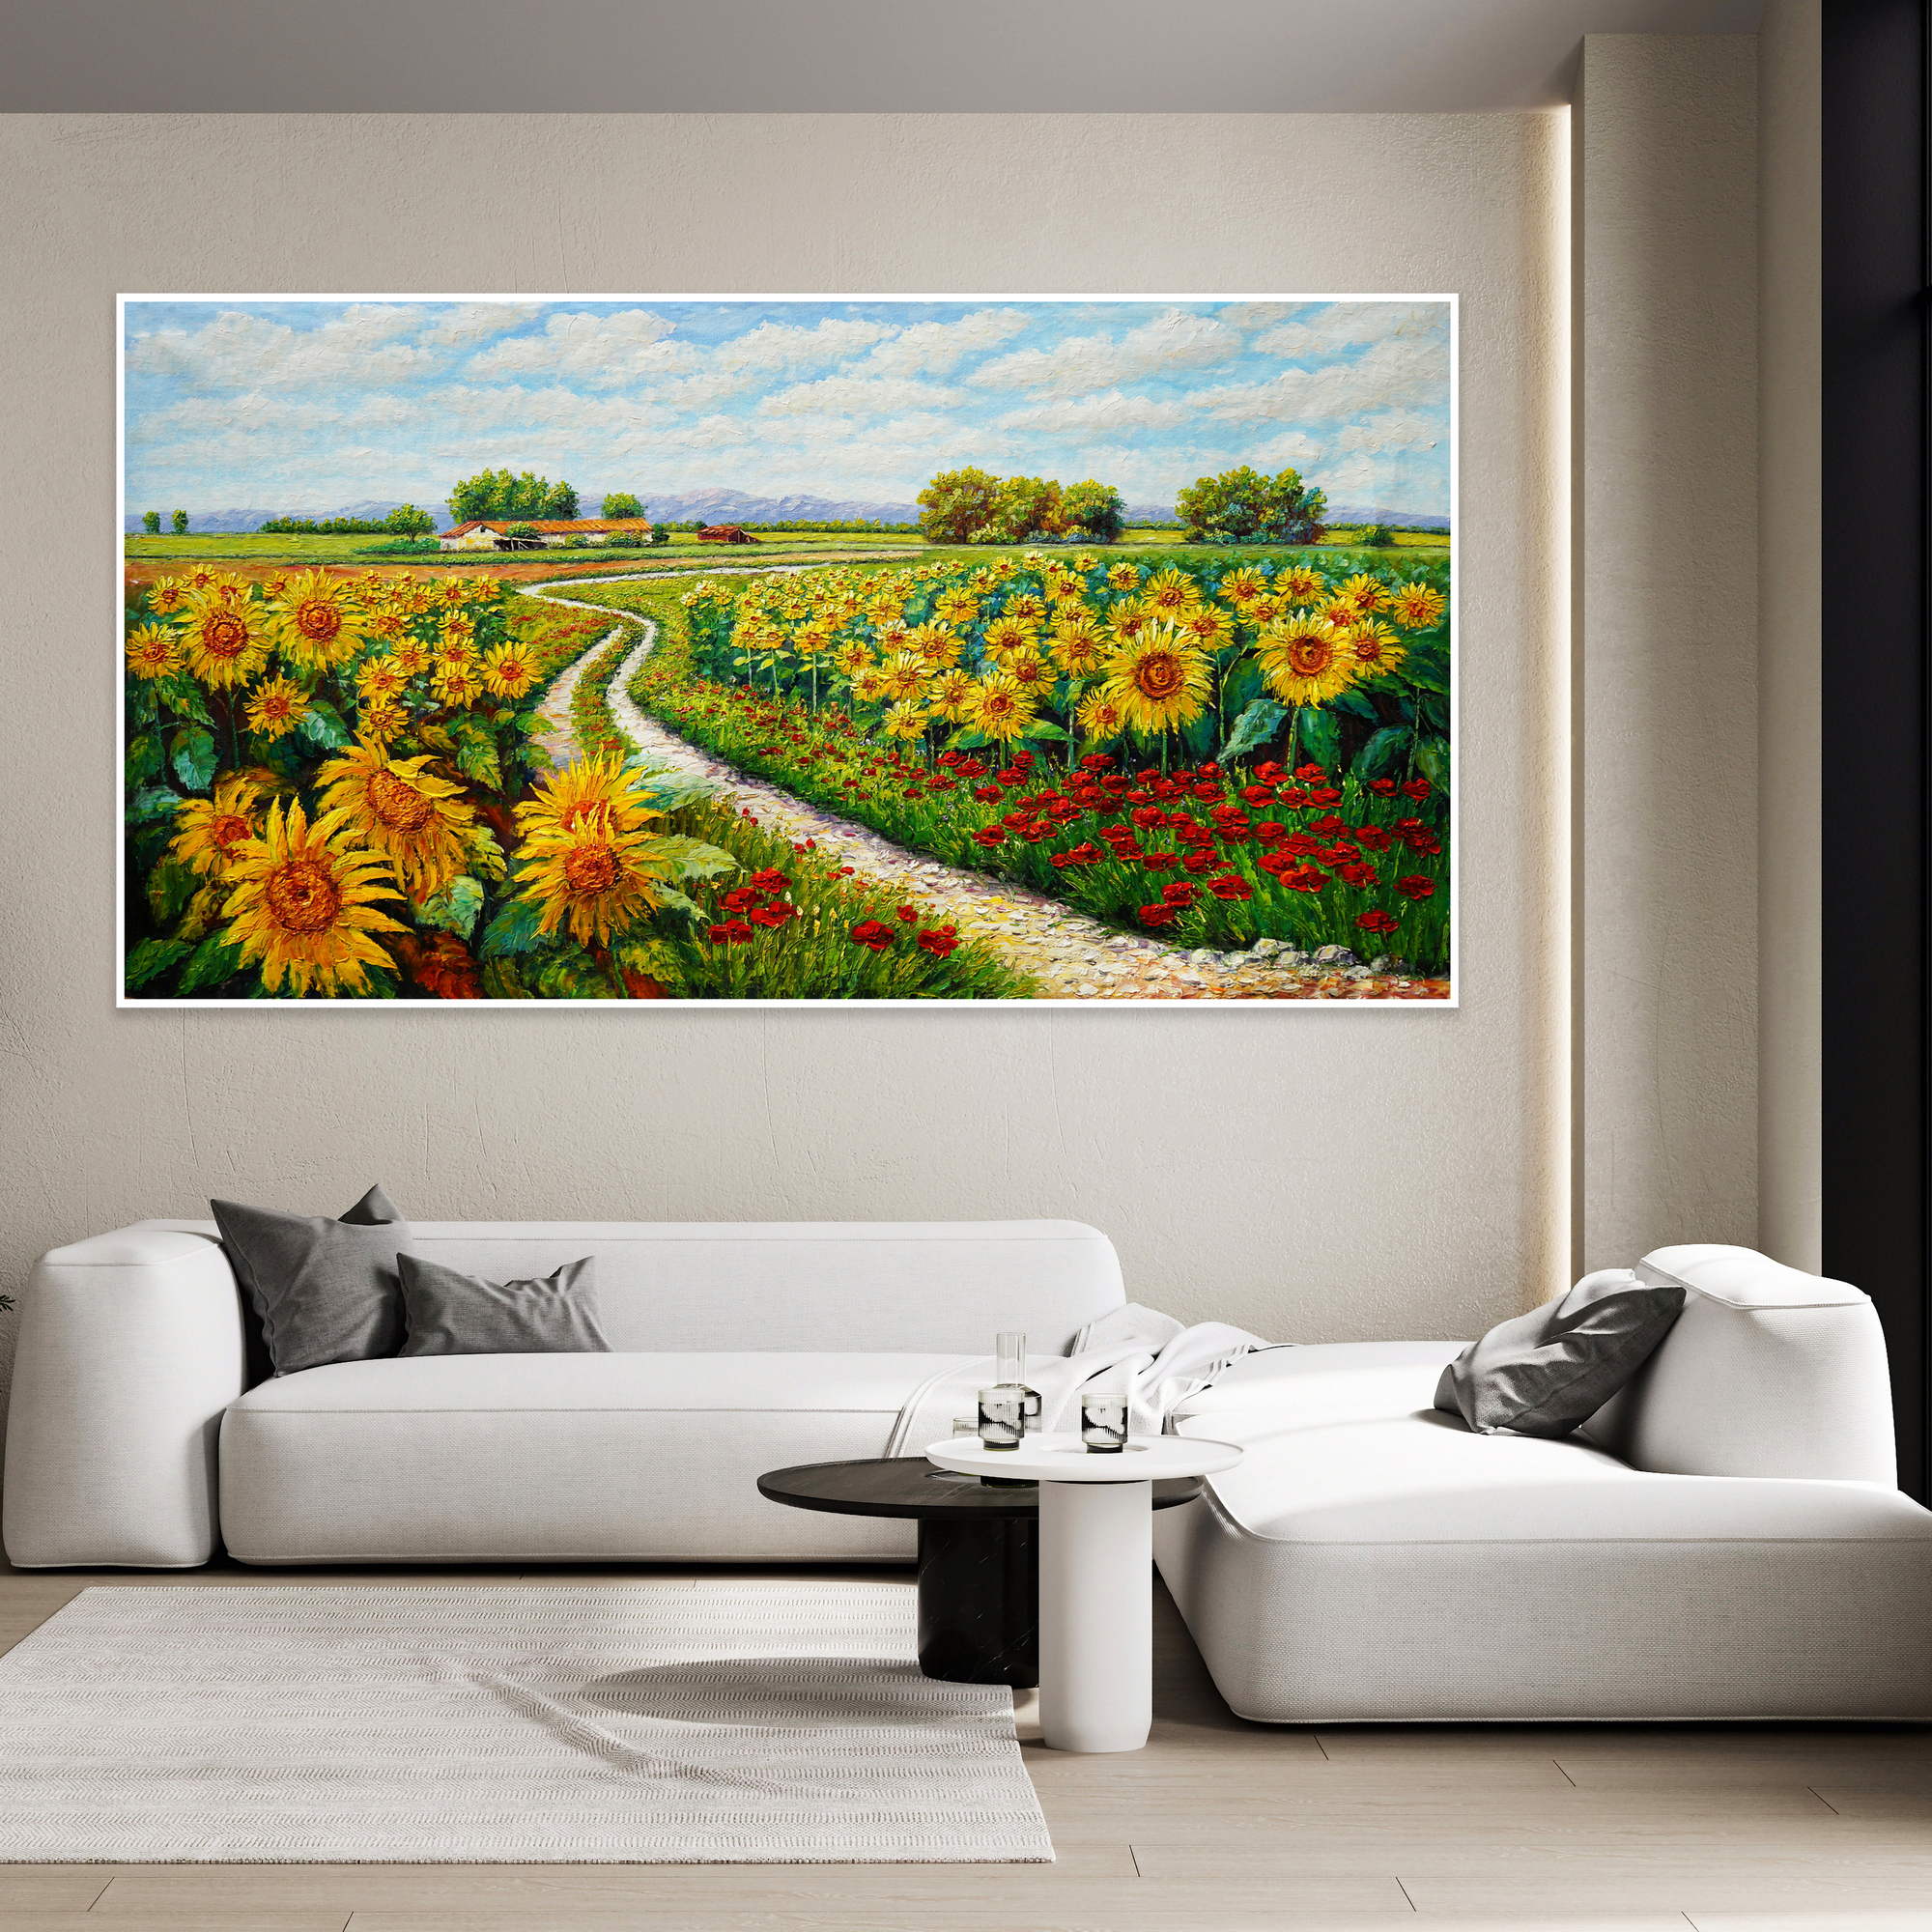 Dipinto a mano Paesaggio con girasoli e papaveri 90x180cm